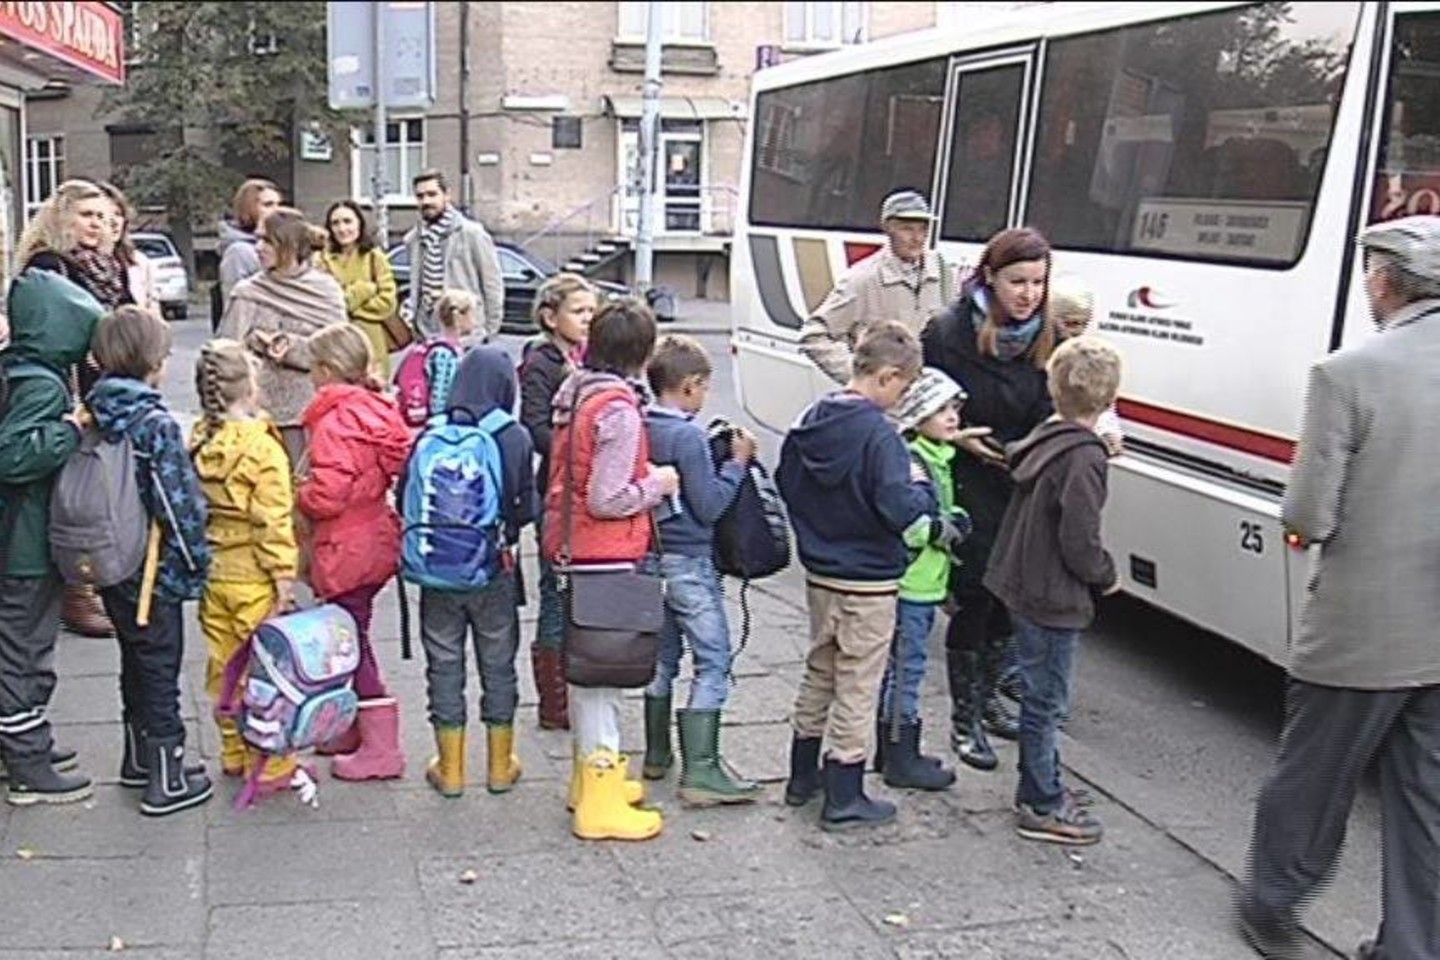 Valdorfo Žaliosios mokyklos mokiniams kiekvieną ankstų rytą renkasi stotelėje ir kantriai laukia maršrutinio autobuso. Geltonas autobusiukas jiems nepriklauso, nes jie miestiečiai.